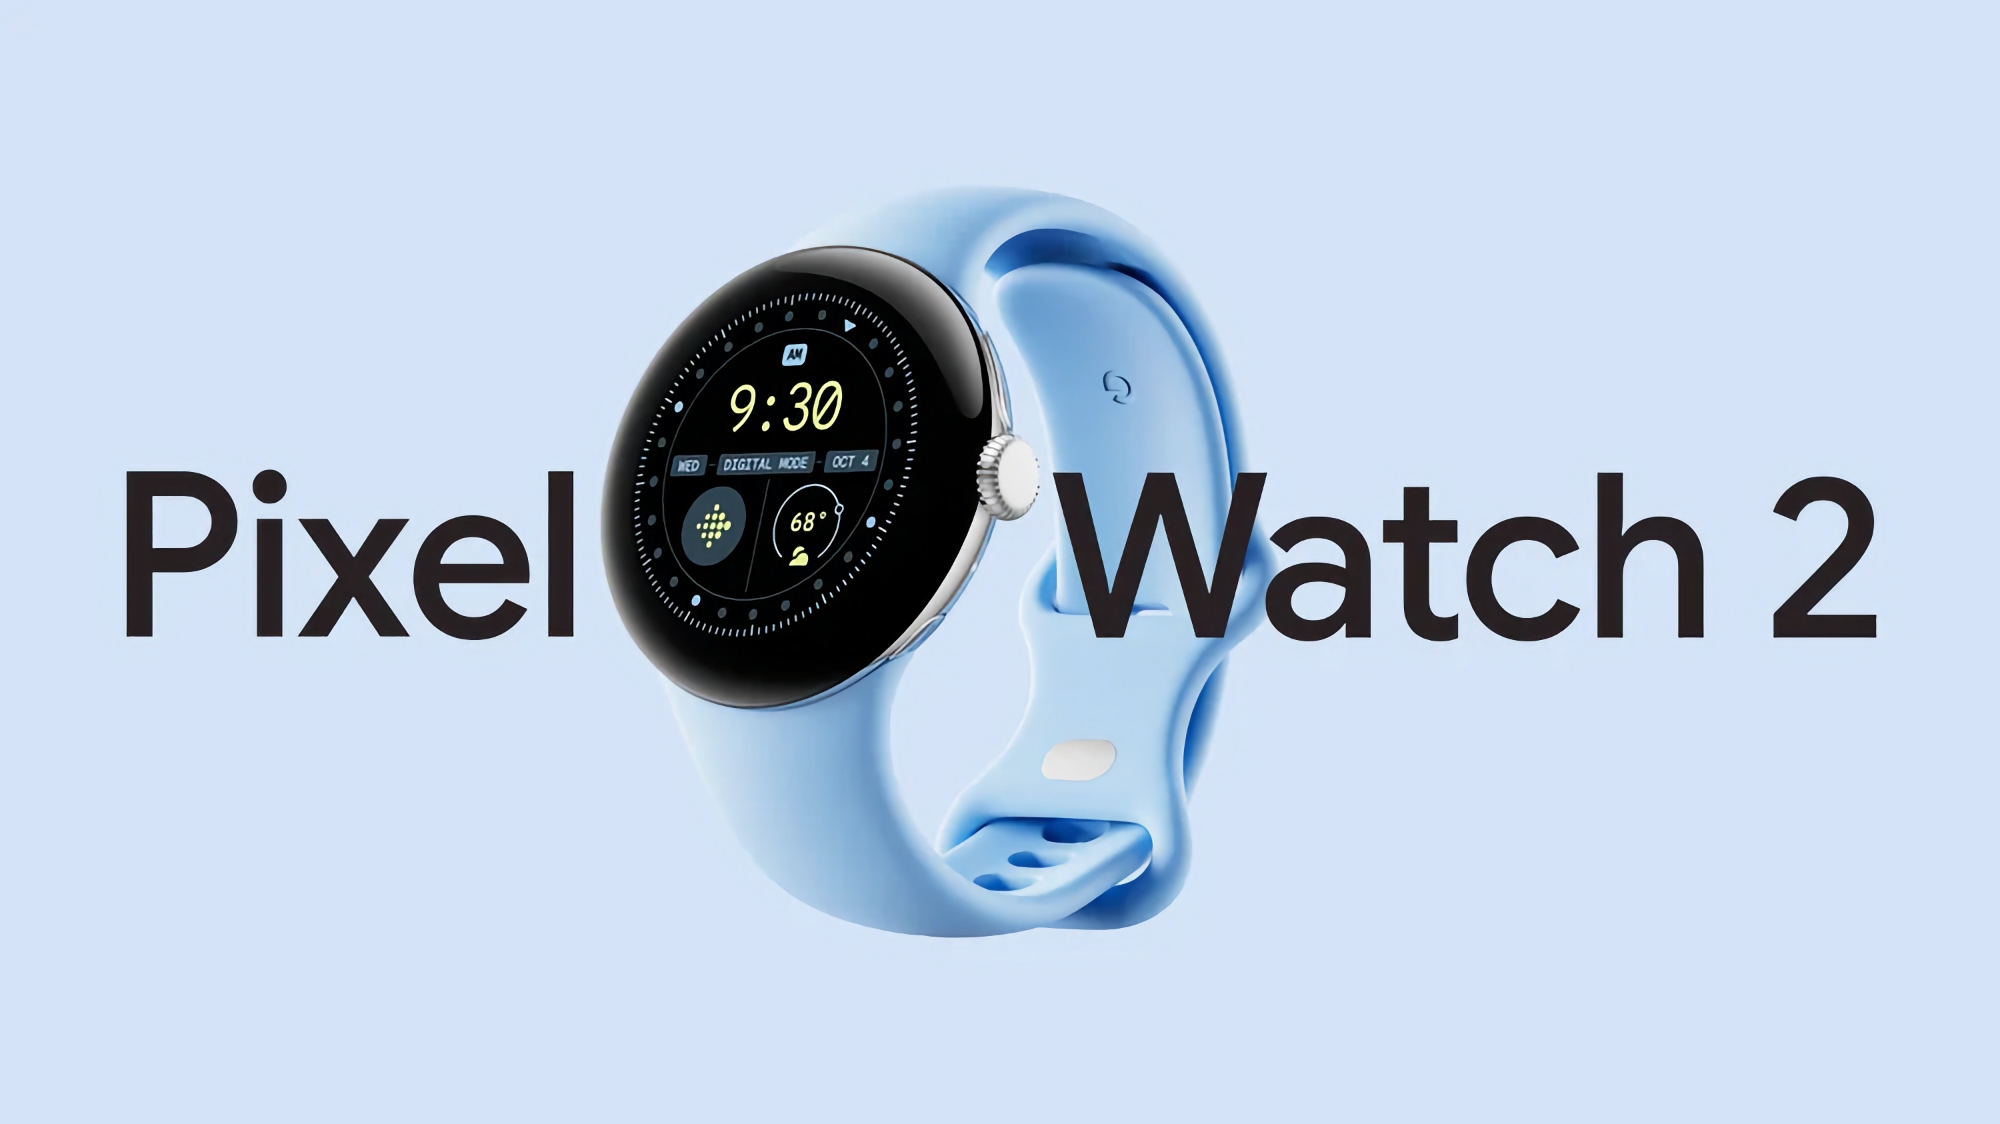 El Google Pixel Watch 2 está disponible por primera vez en Amazon con un descuento de 50 dólares